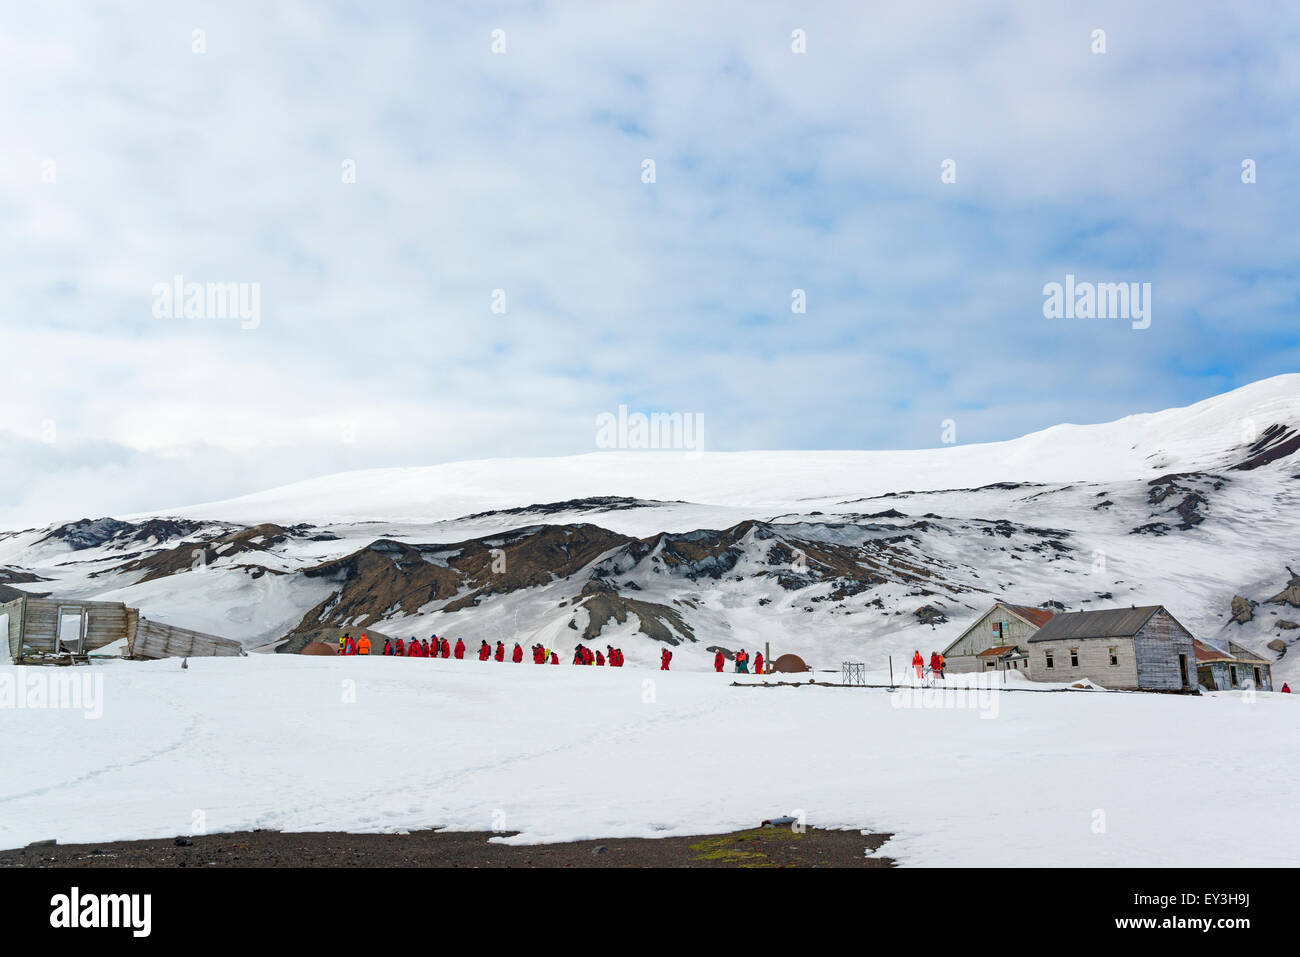 Gruppo di persone nei pressi di una base sull isola Deception, montagne coperte di neve in background. Foto Stock